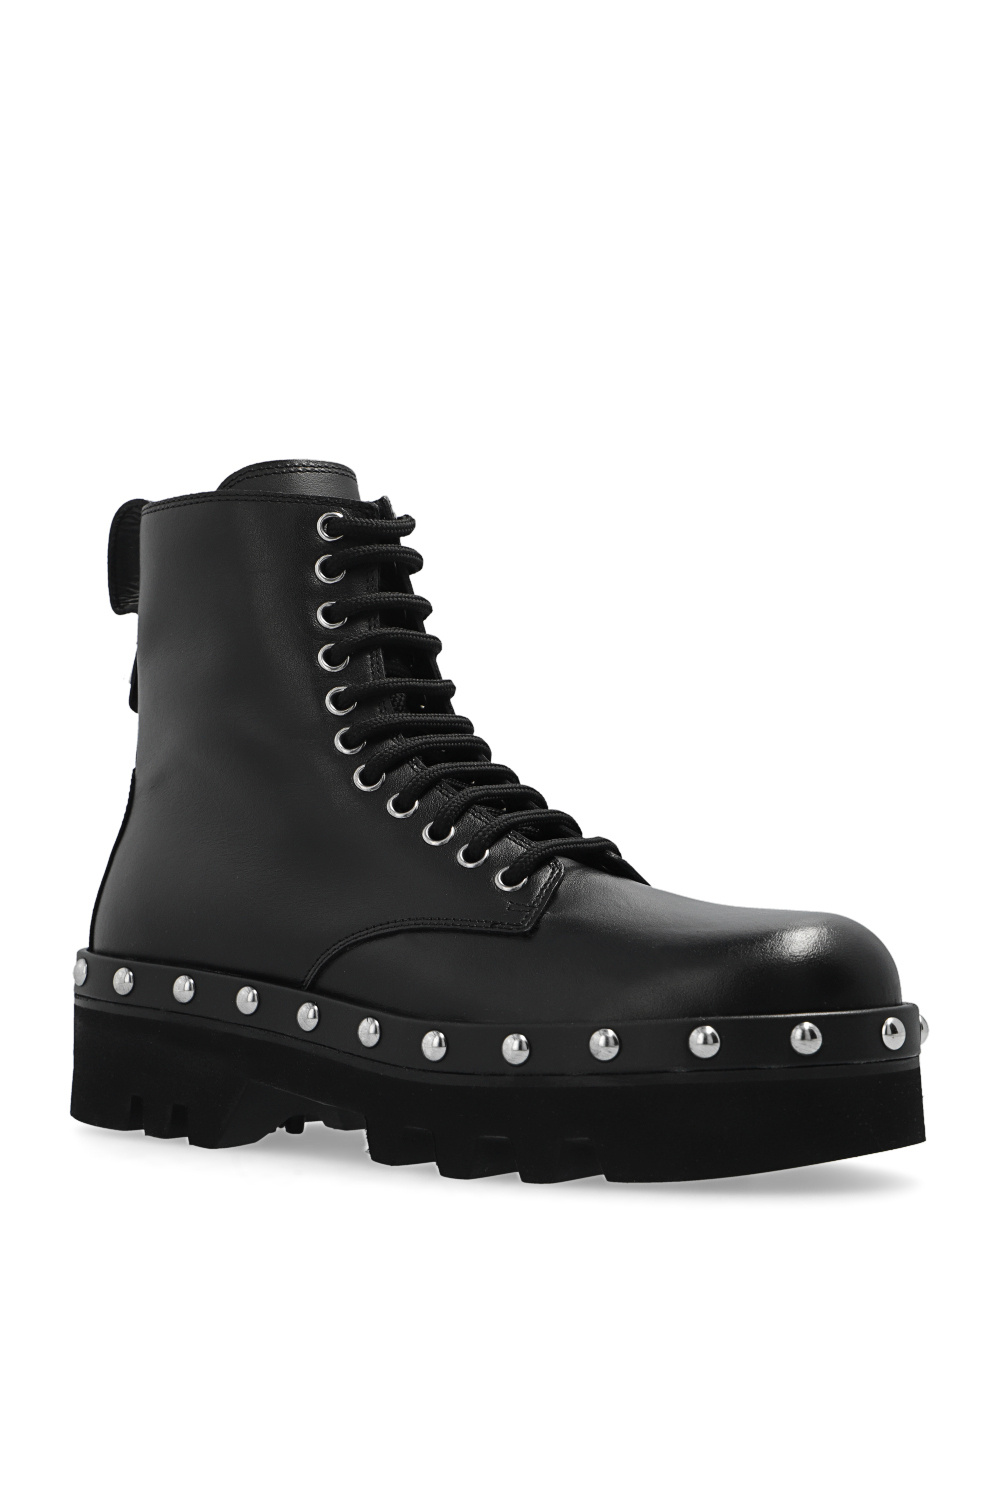 Furla ‘Rita’ leather combat boots